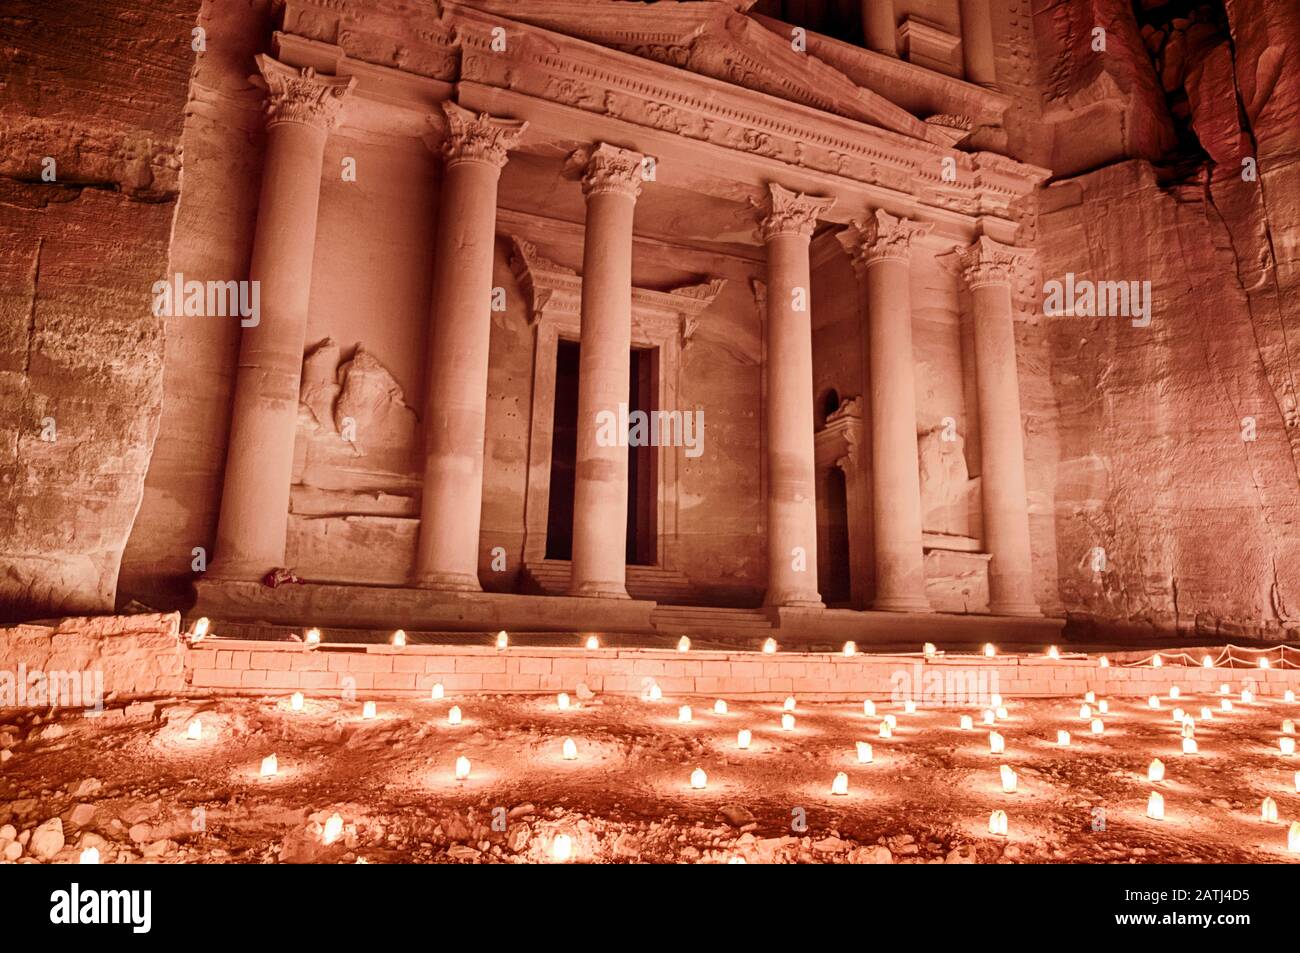 La nuit, le Trésor de Petra en Jordanie est souvent éclairé par la lumière de centaines de bougies. Banque D'Images